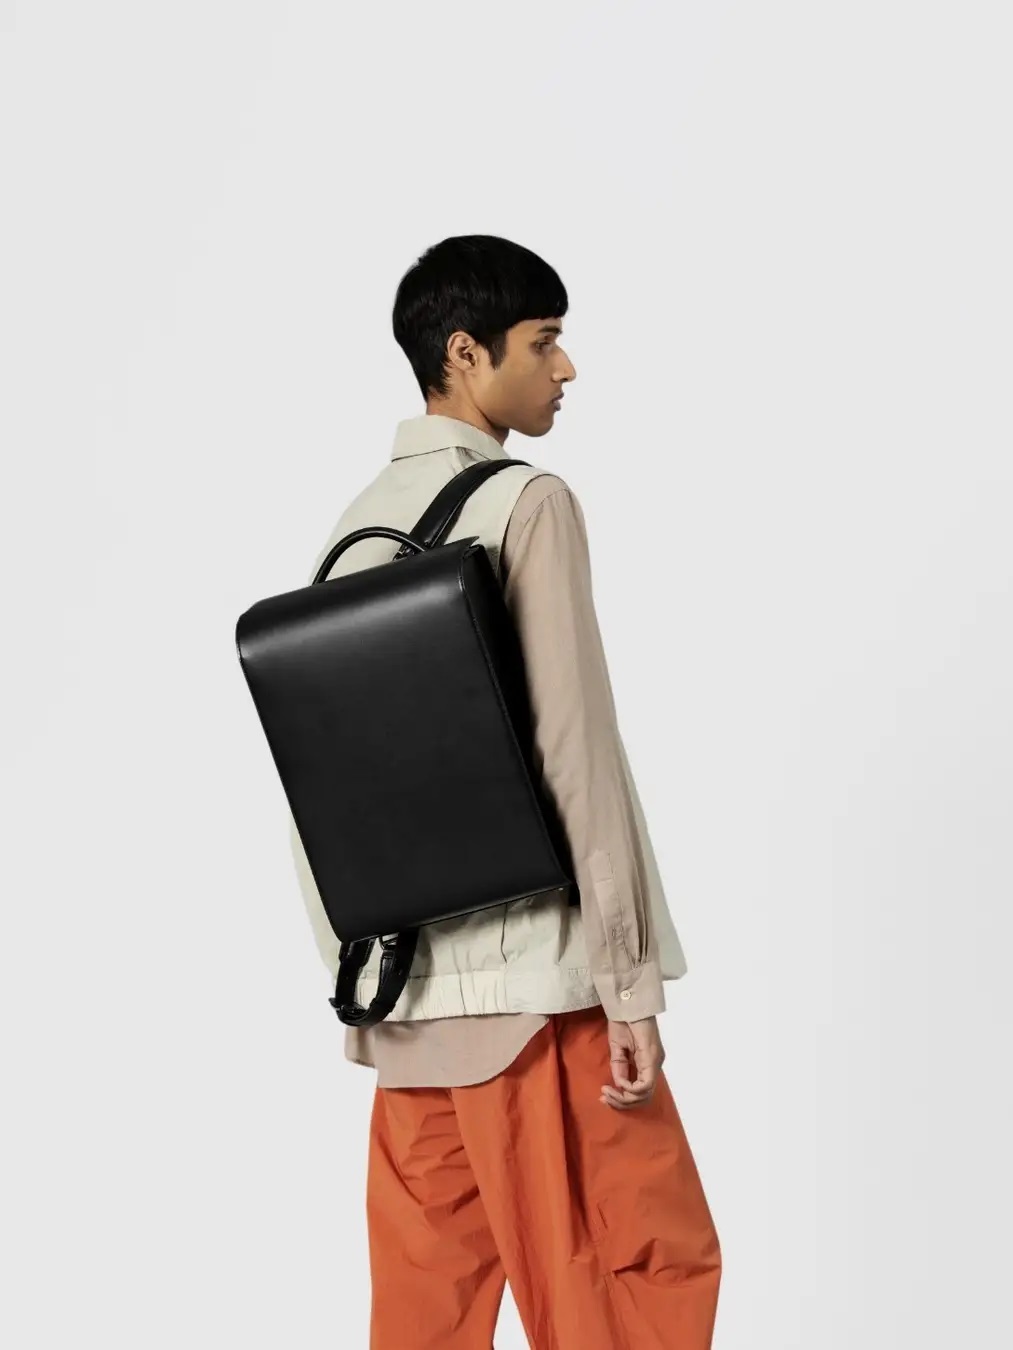 土屋鞄、大人ランドセルの新型「OTONA RANDSEL FT 001」を発売